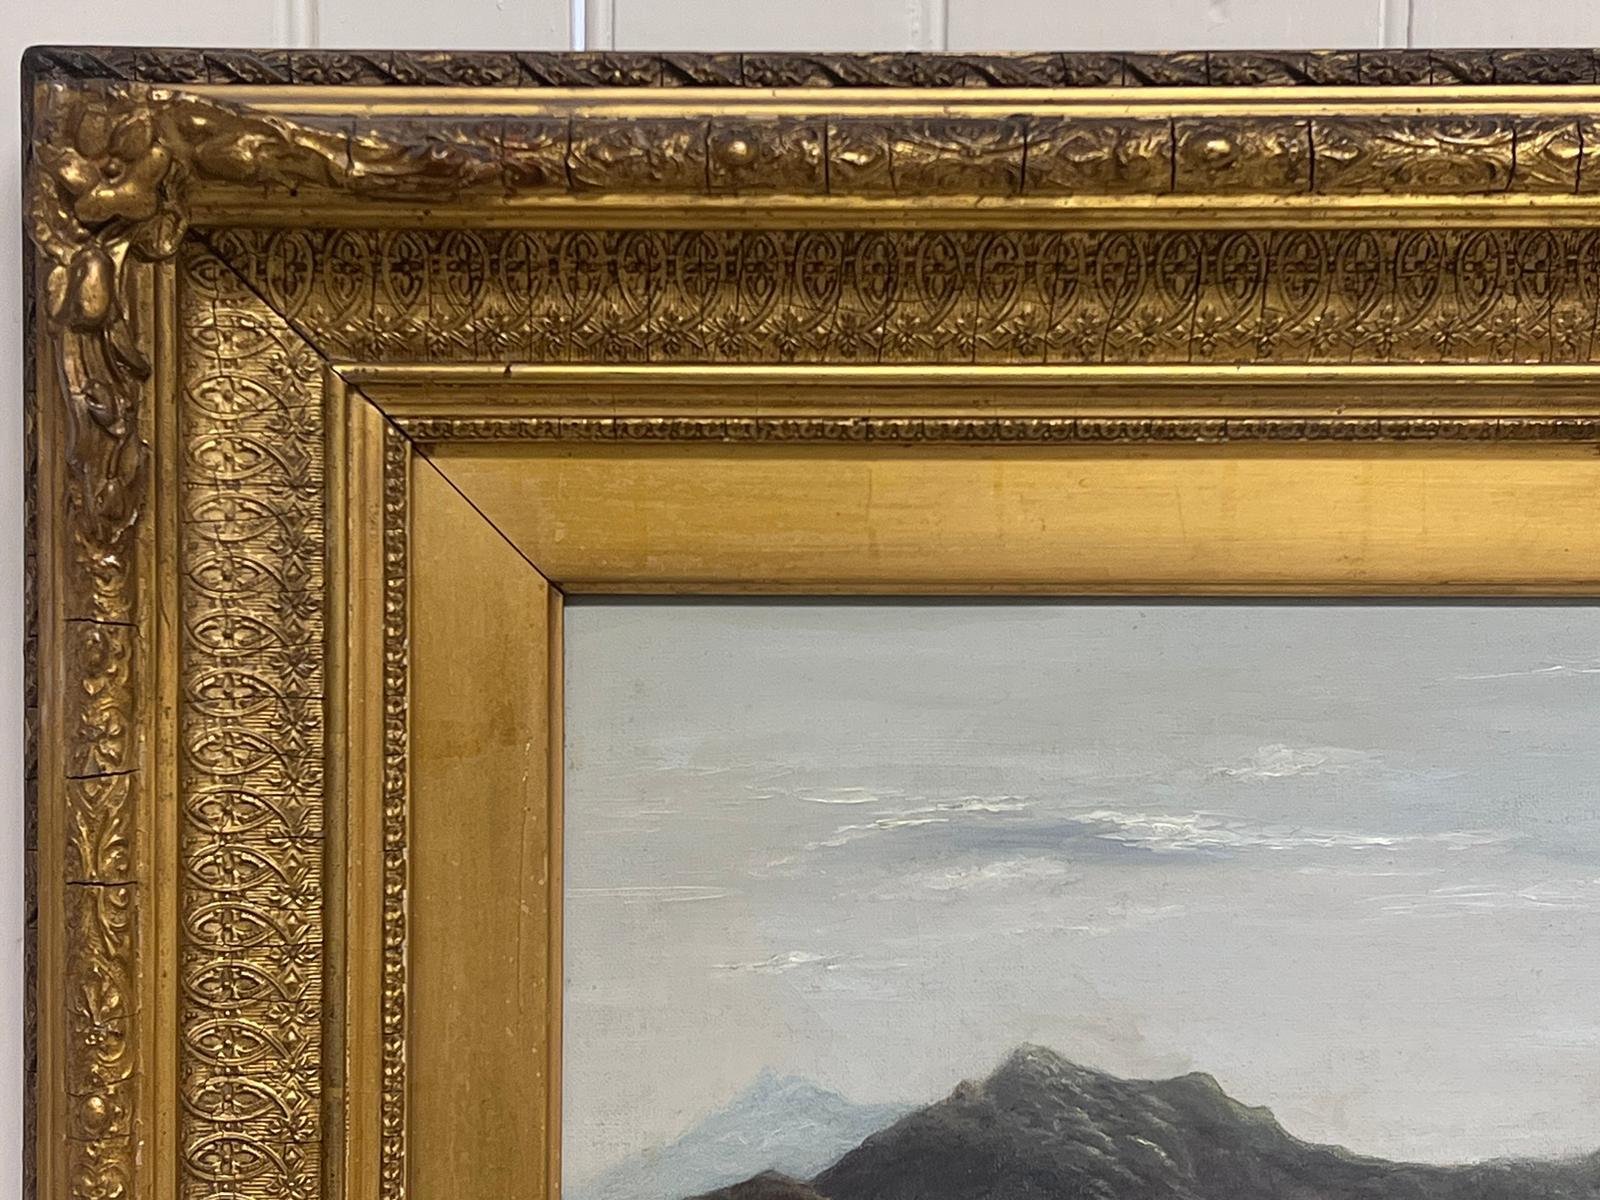 Paysage Panoramic écossais du 19ème siècle représentant une scène de Loch dans un cadre doré 3